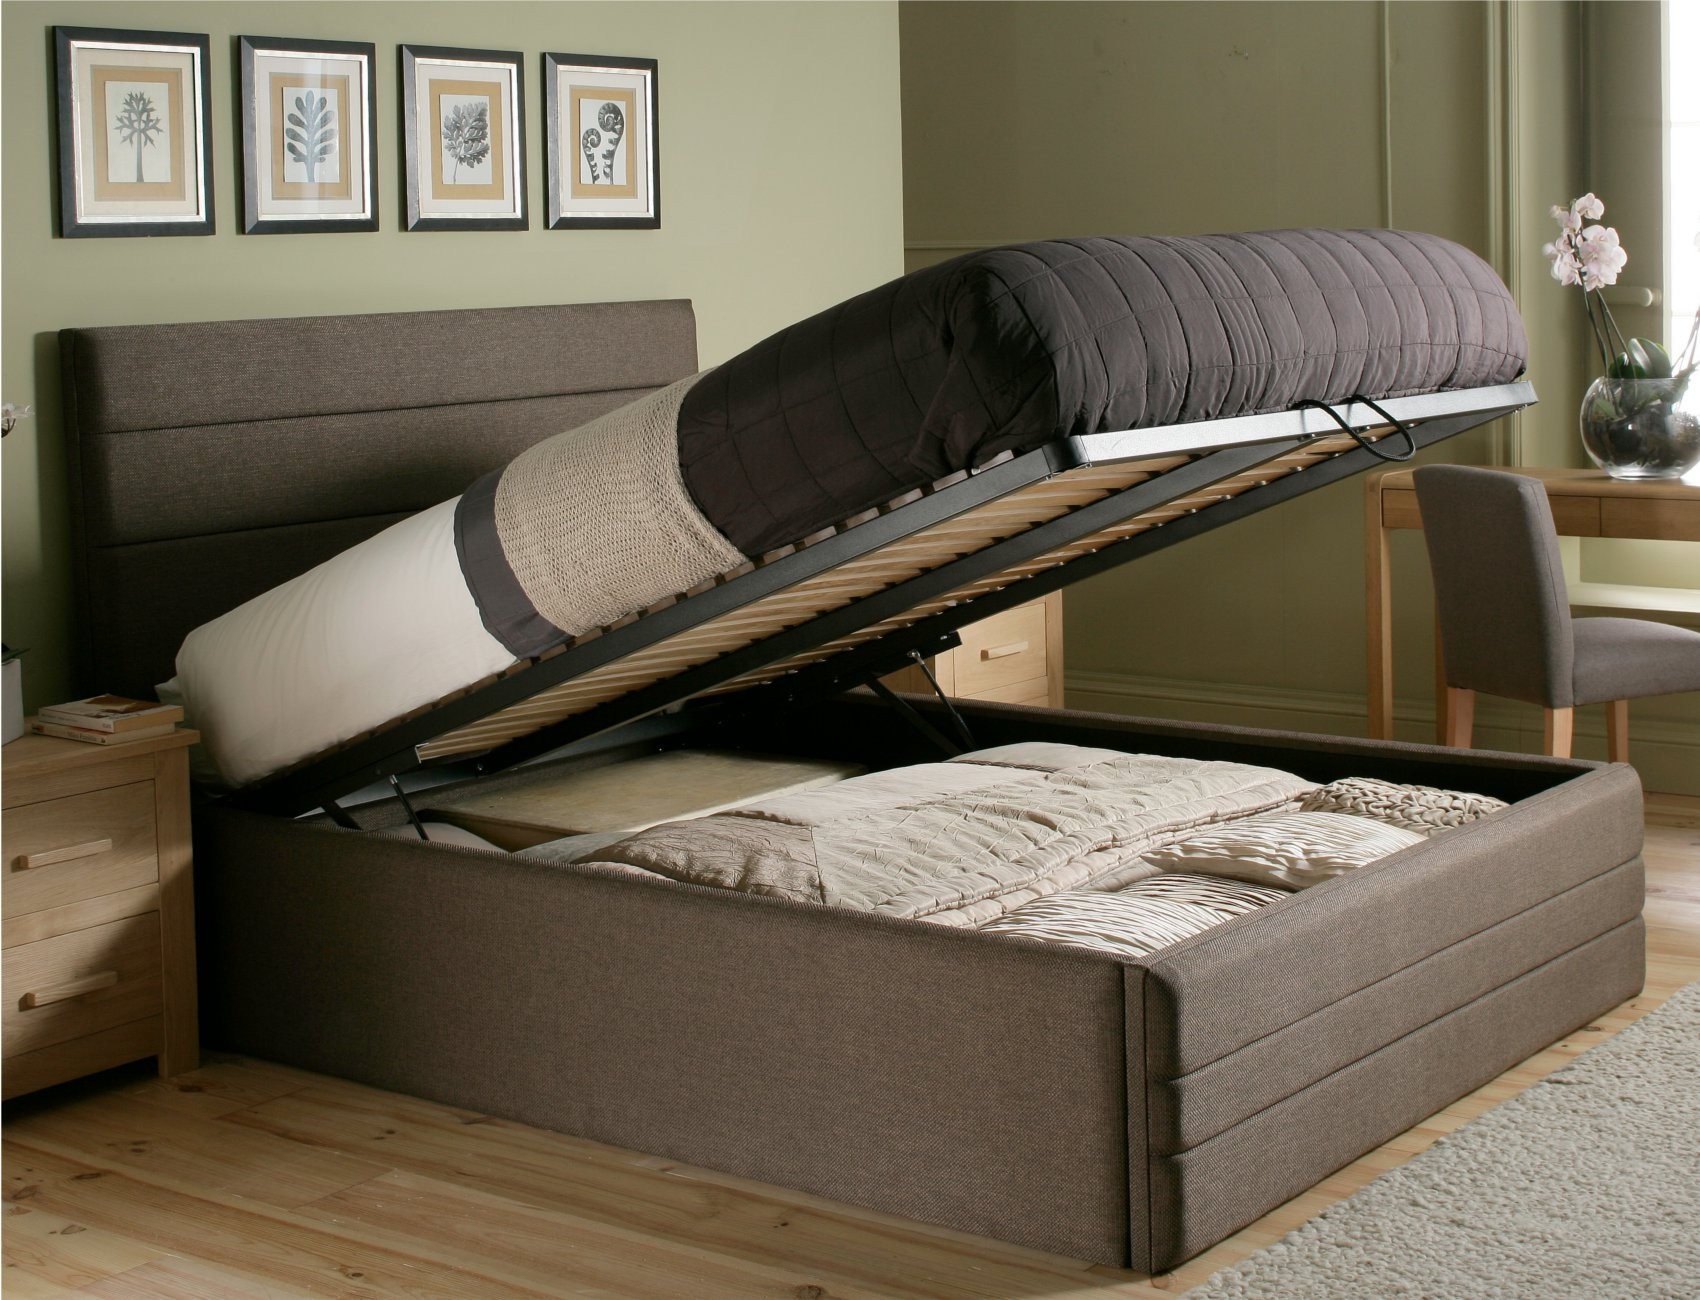 кровать с встроенным матрасом и подъемным механизмом